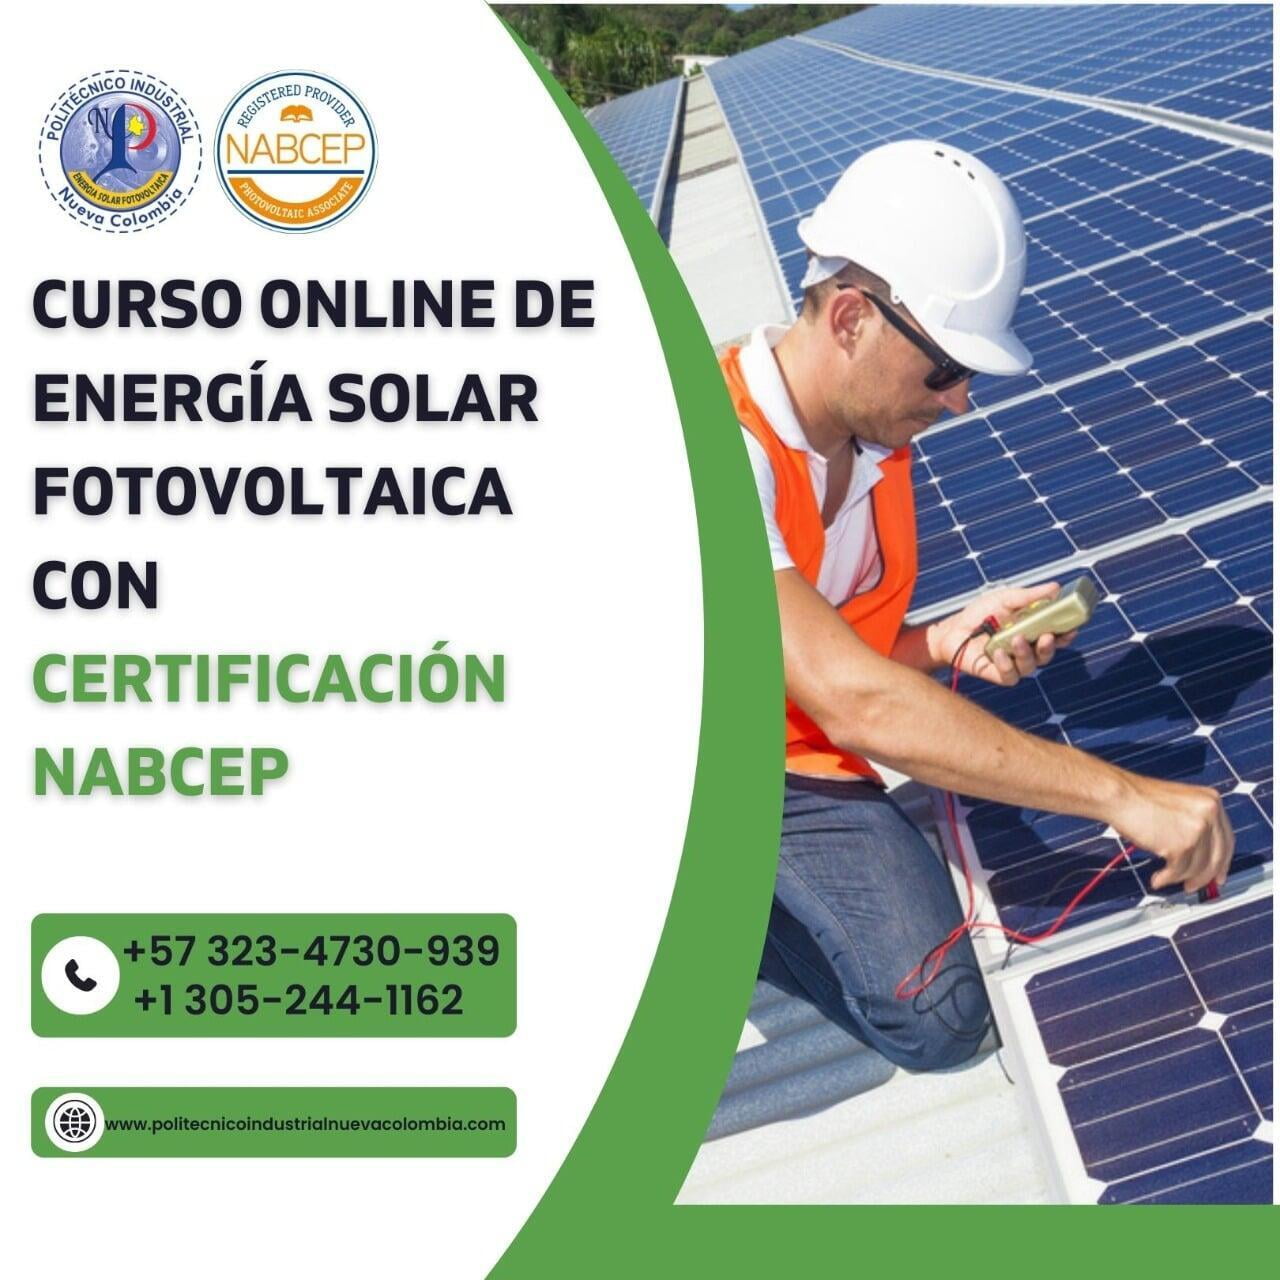 Dispuesto Predicar dentro de poco Curso Online Energia Solar en Español Instalación de Sistemas en Miami